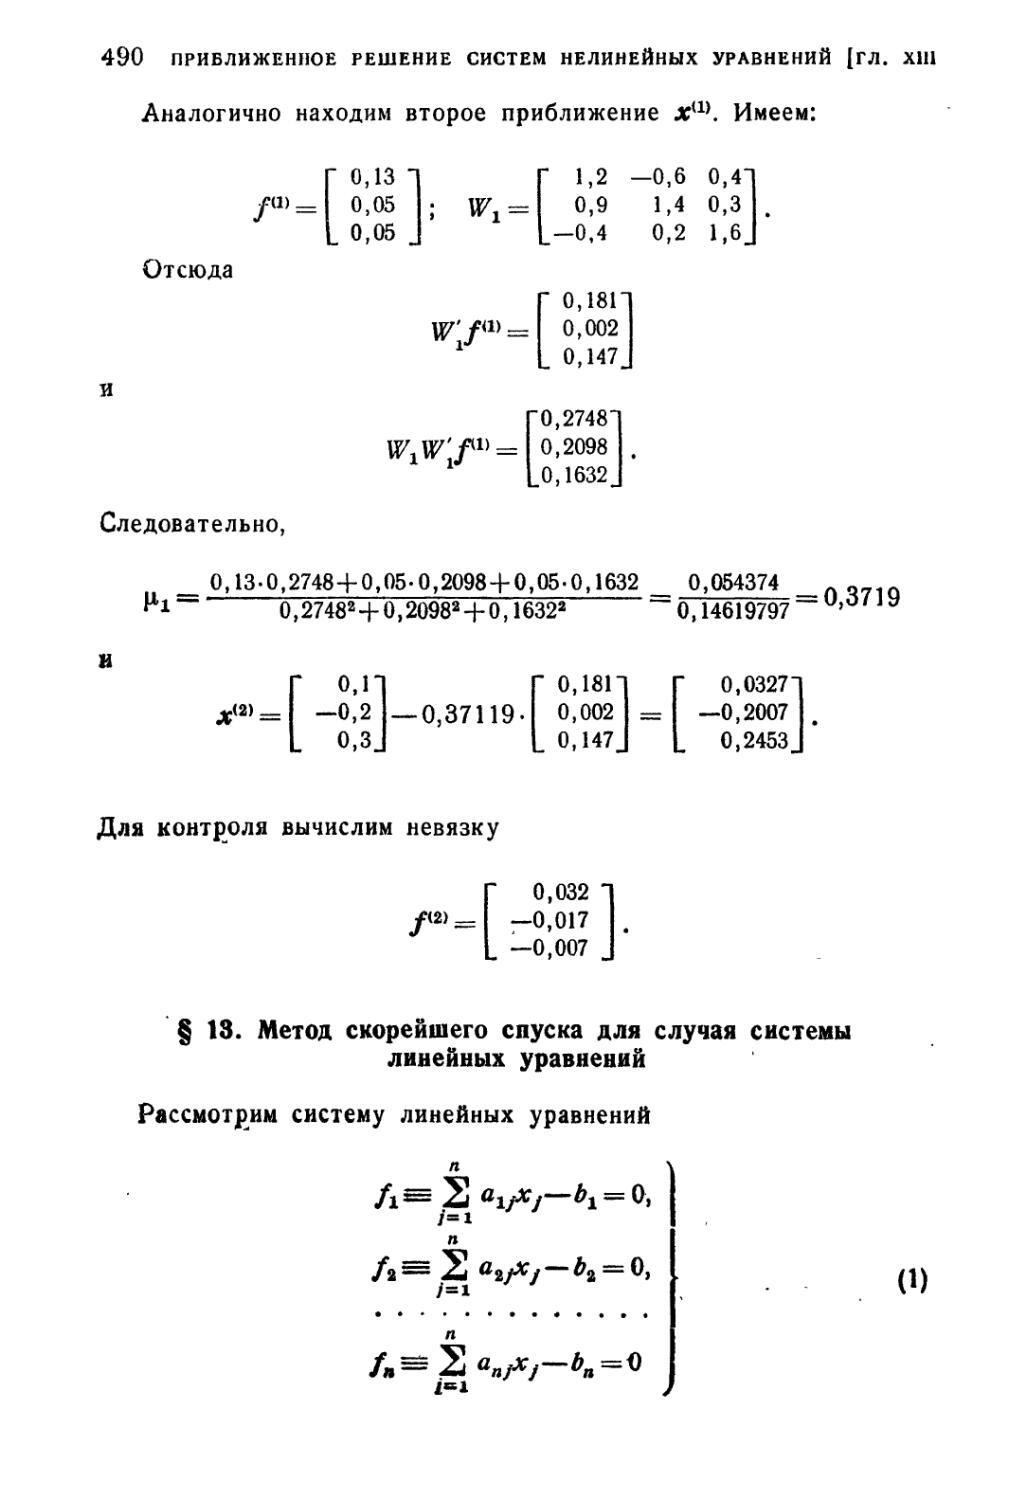 § 13. Метод скорейшего спуска для случая системы линейных уравнений